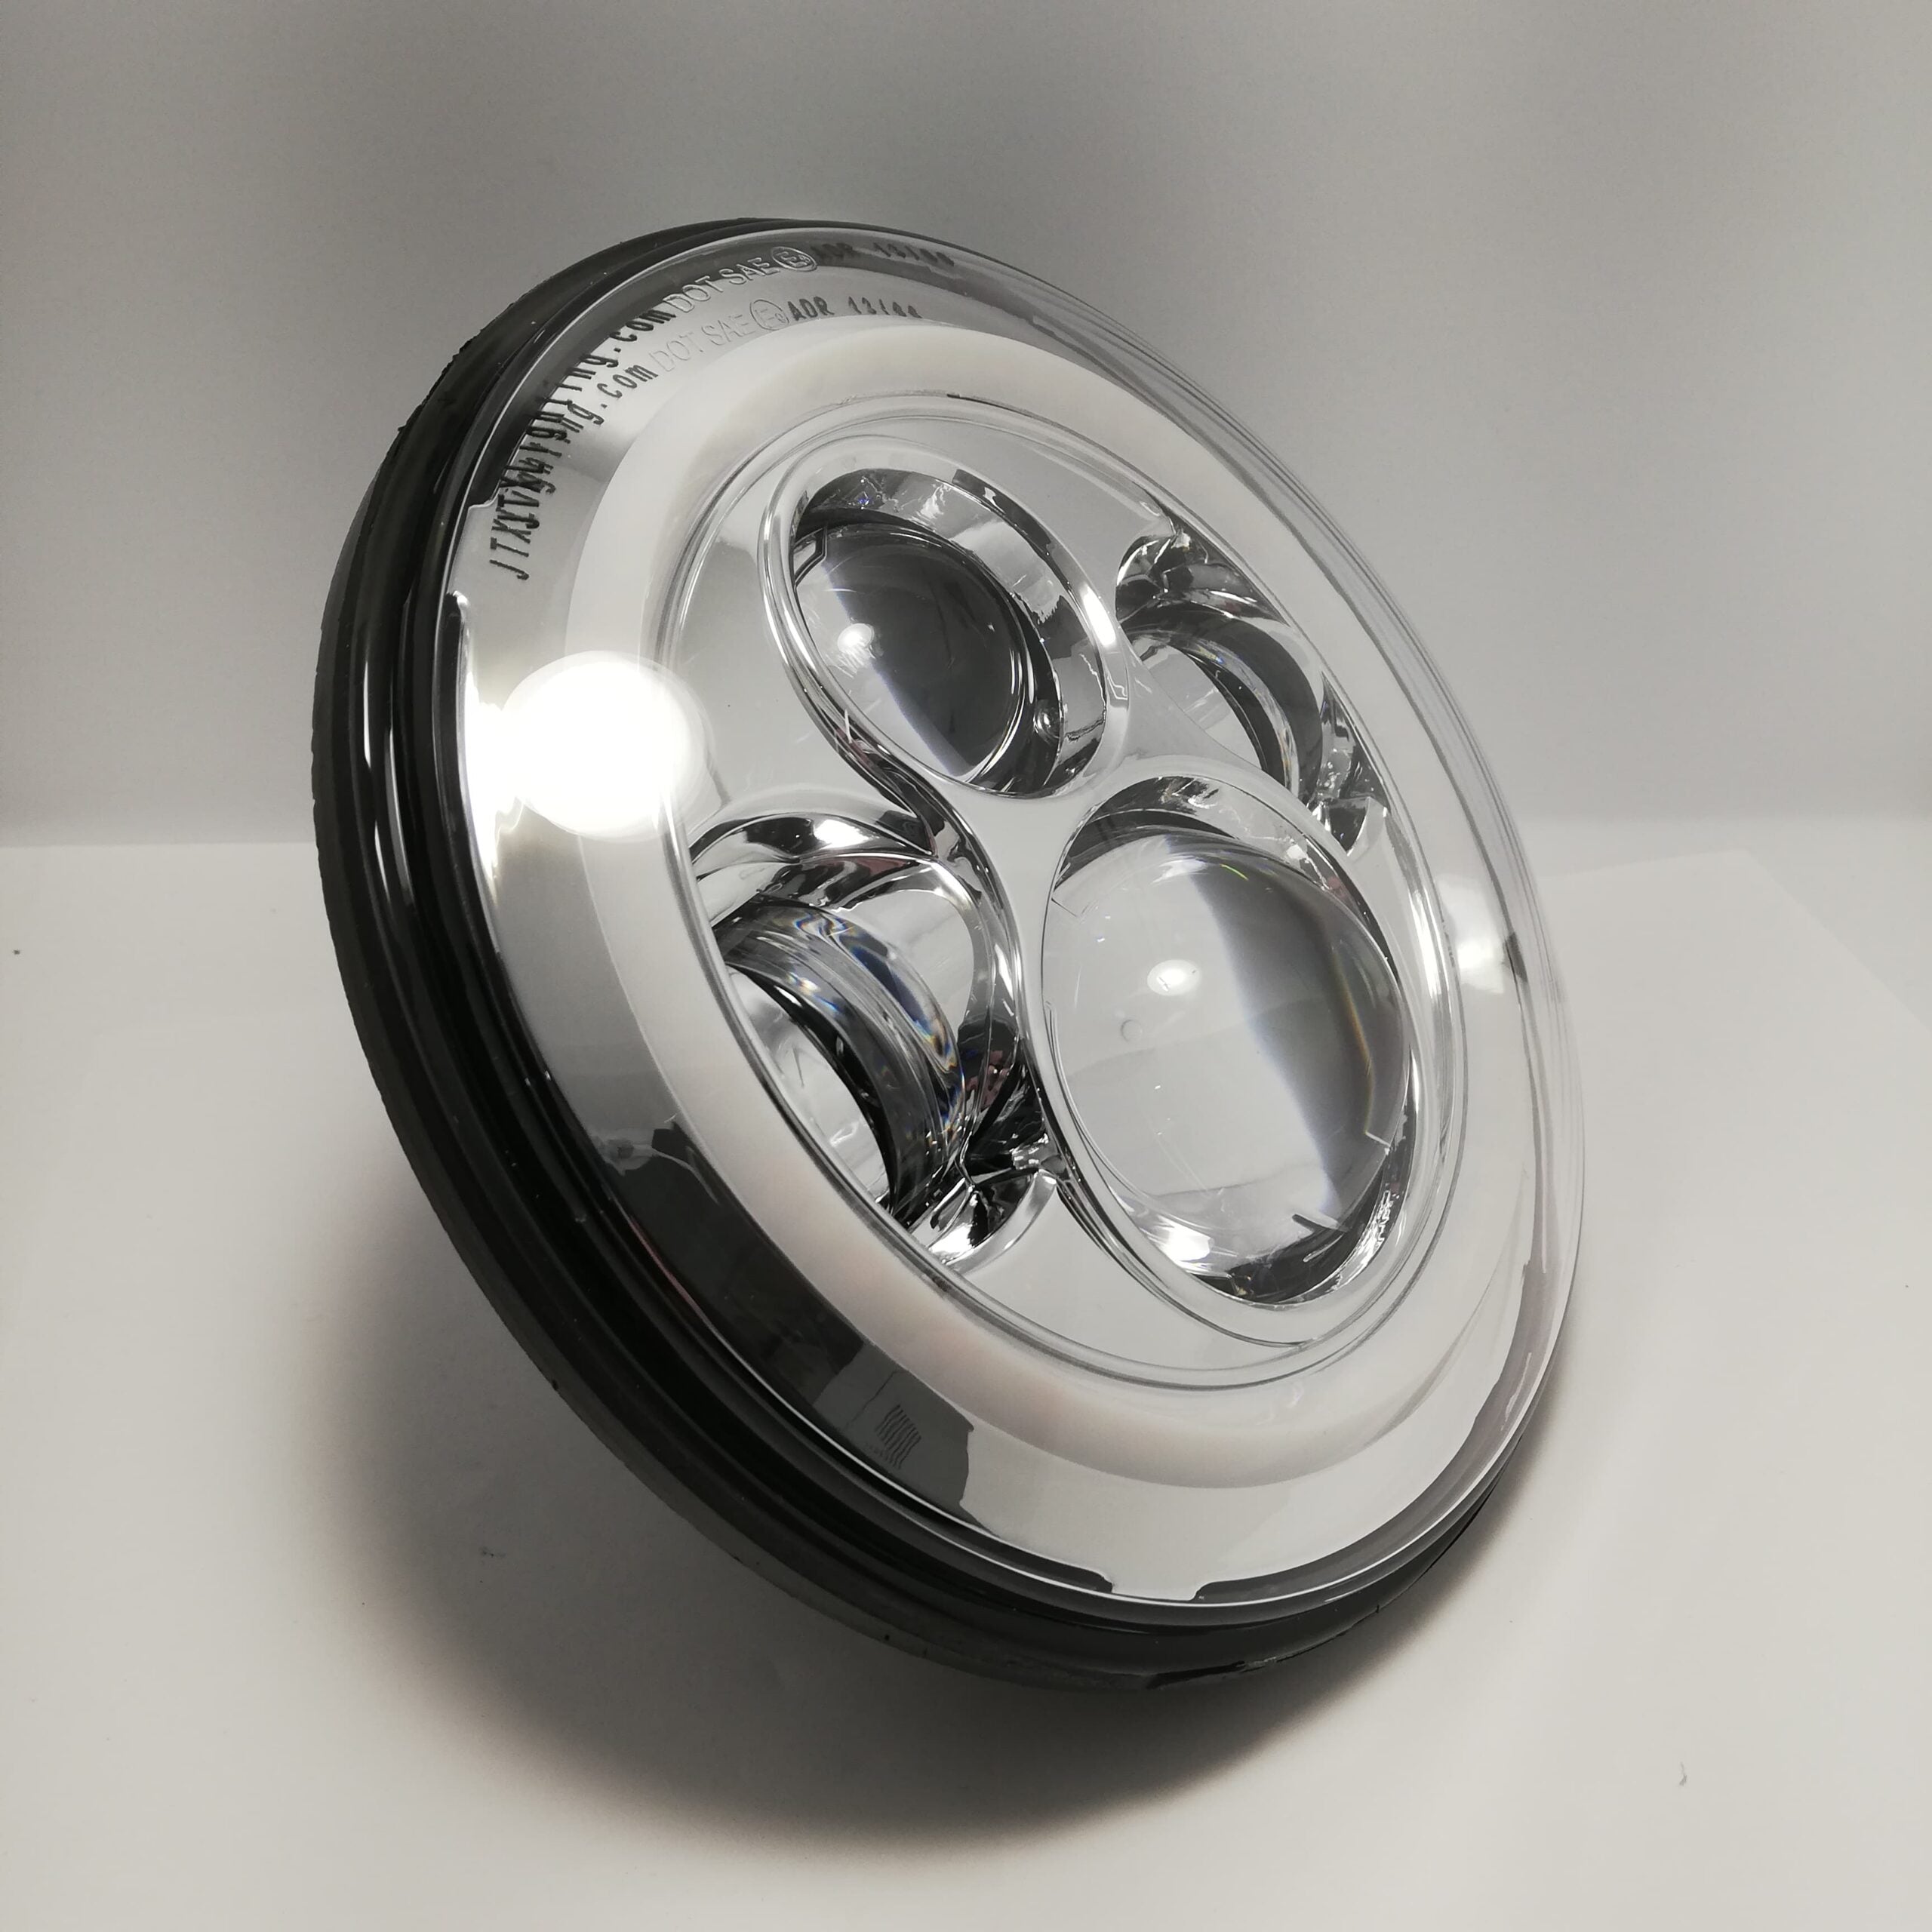 JTX Lighting 7" Chrome LED Headlight Pair w White/Amber Halo | JTX Lighting